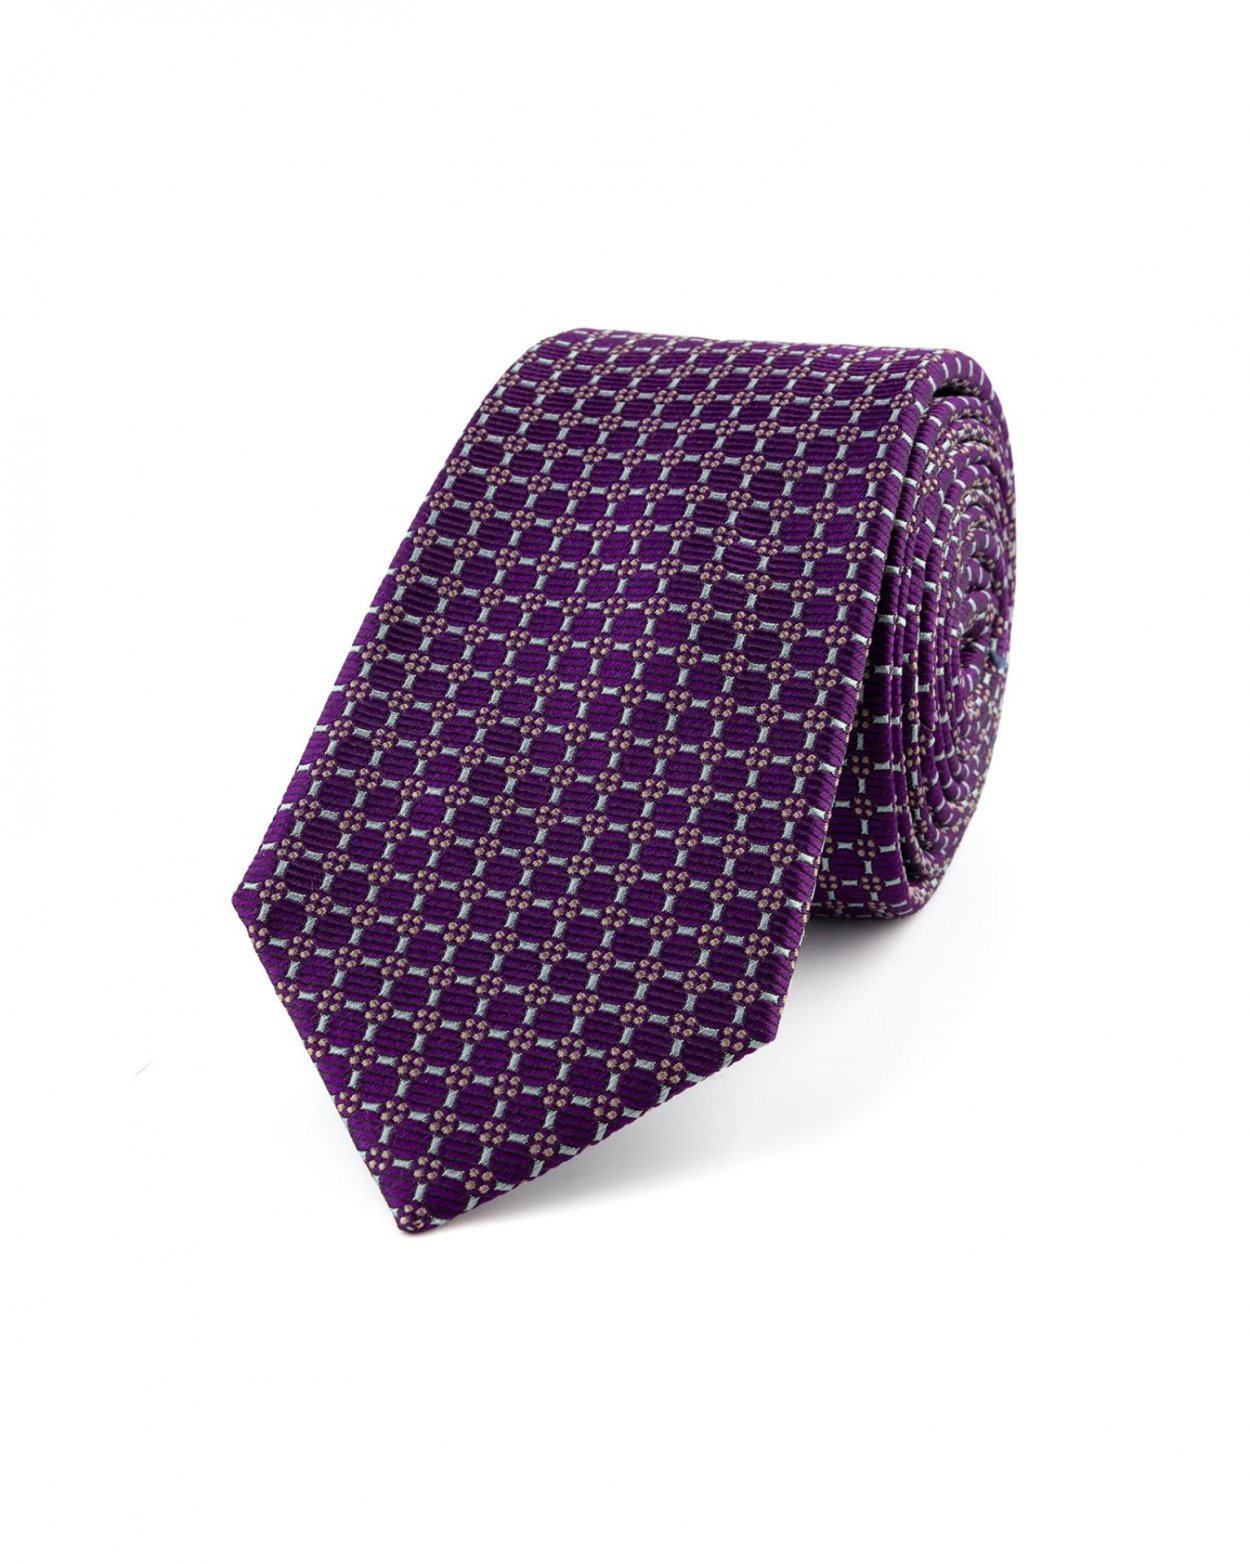 Fialová hedvábná kravata s jemným vzorem